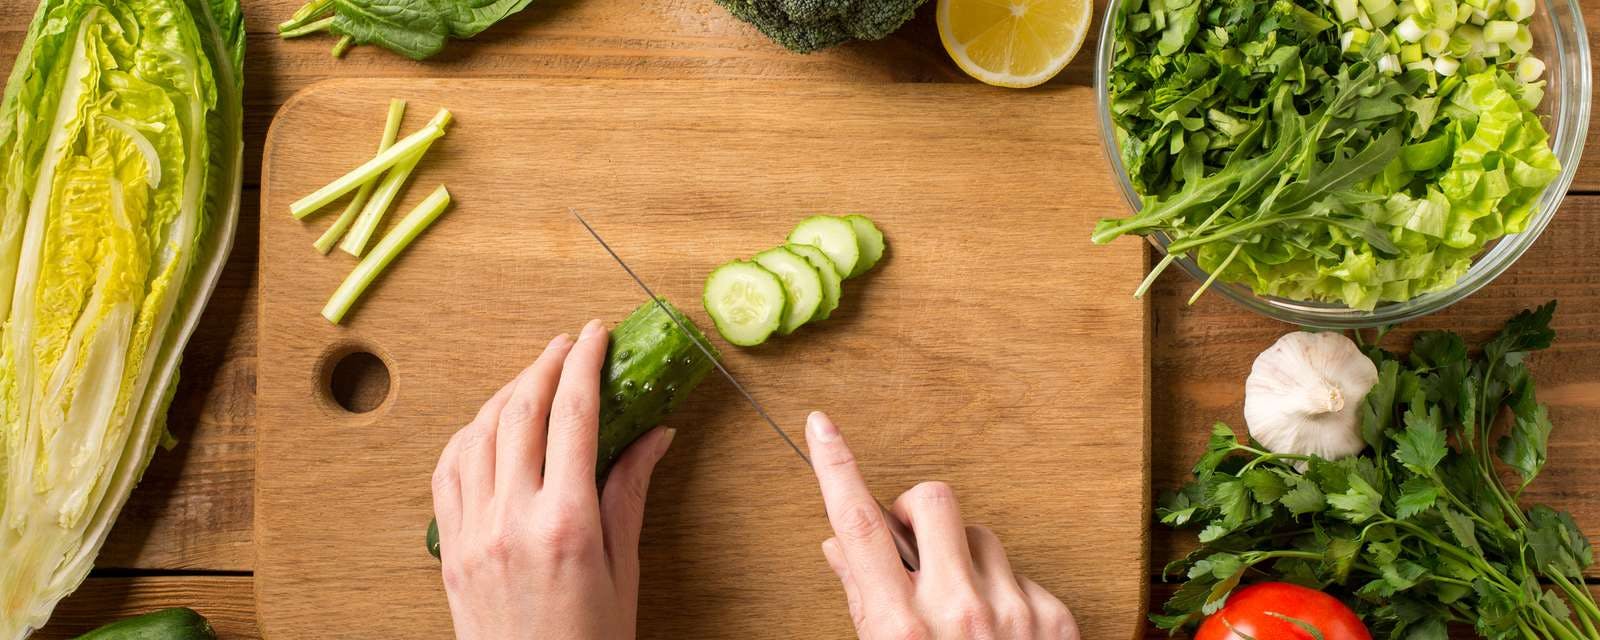 Gemüse mit Nakiri Messer schneiden